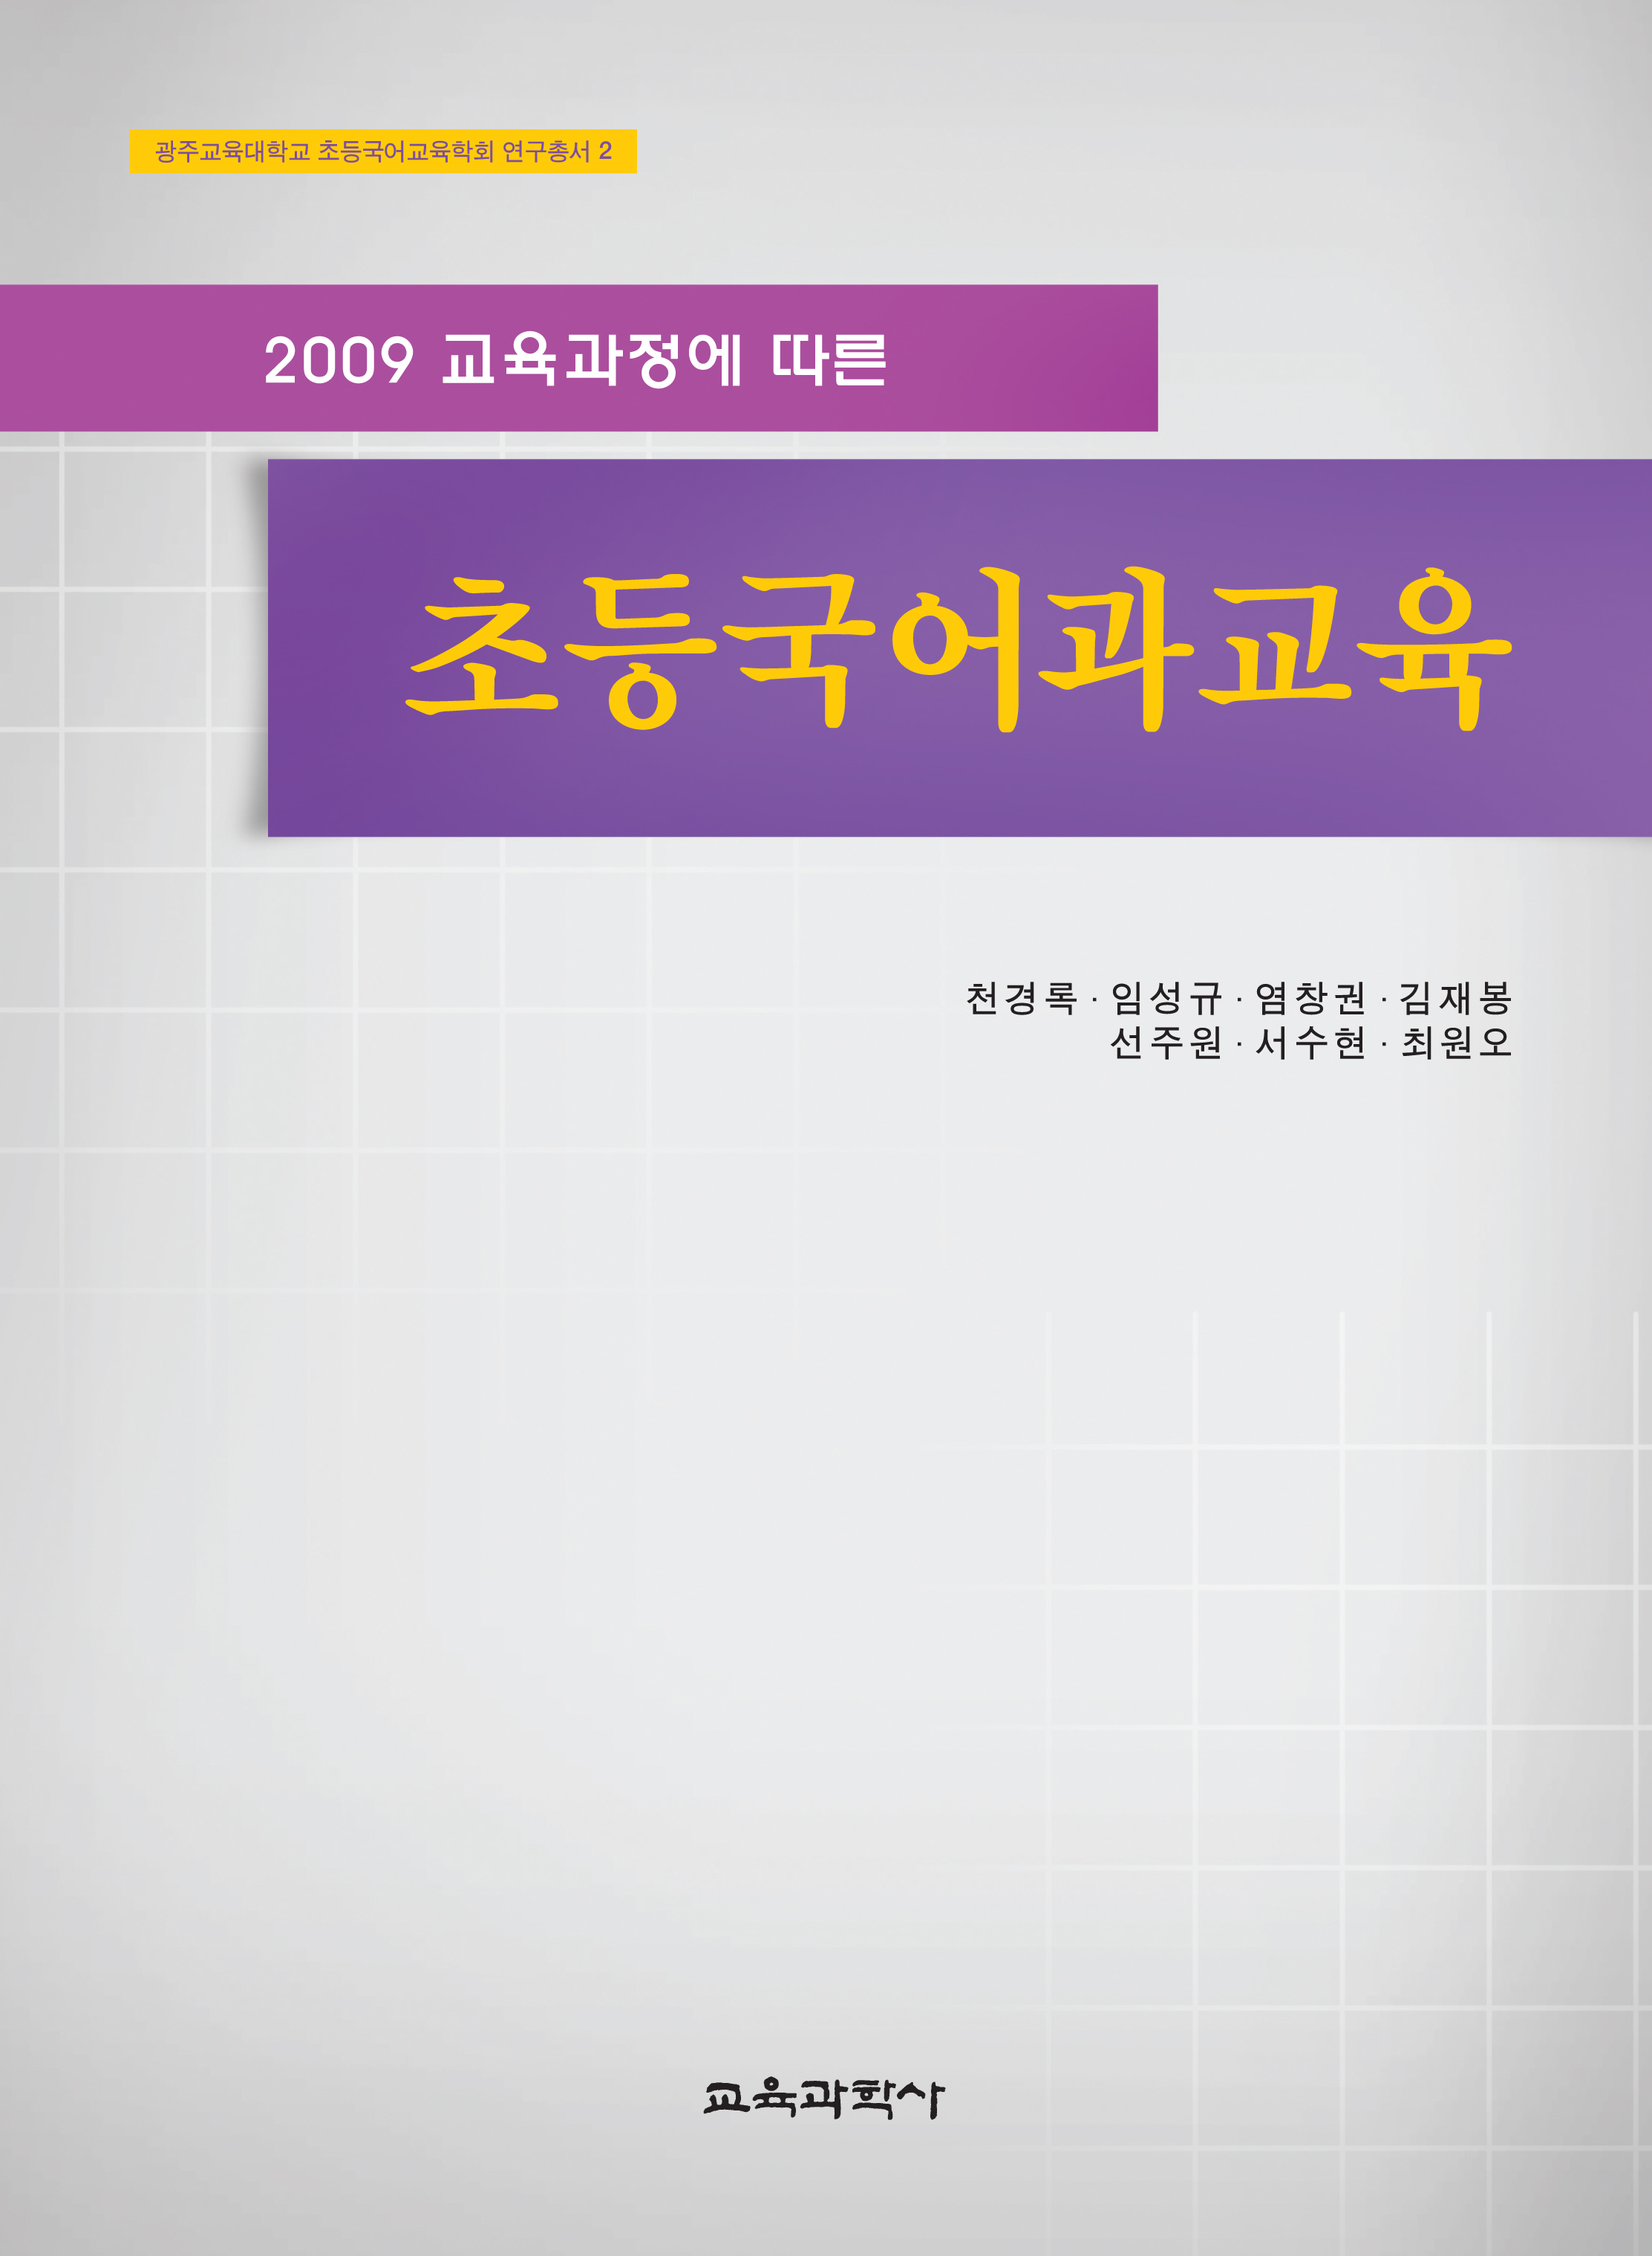 2009 교육과정에 따른 초등국어과교육